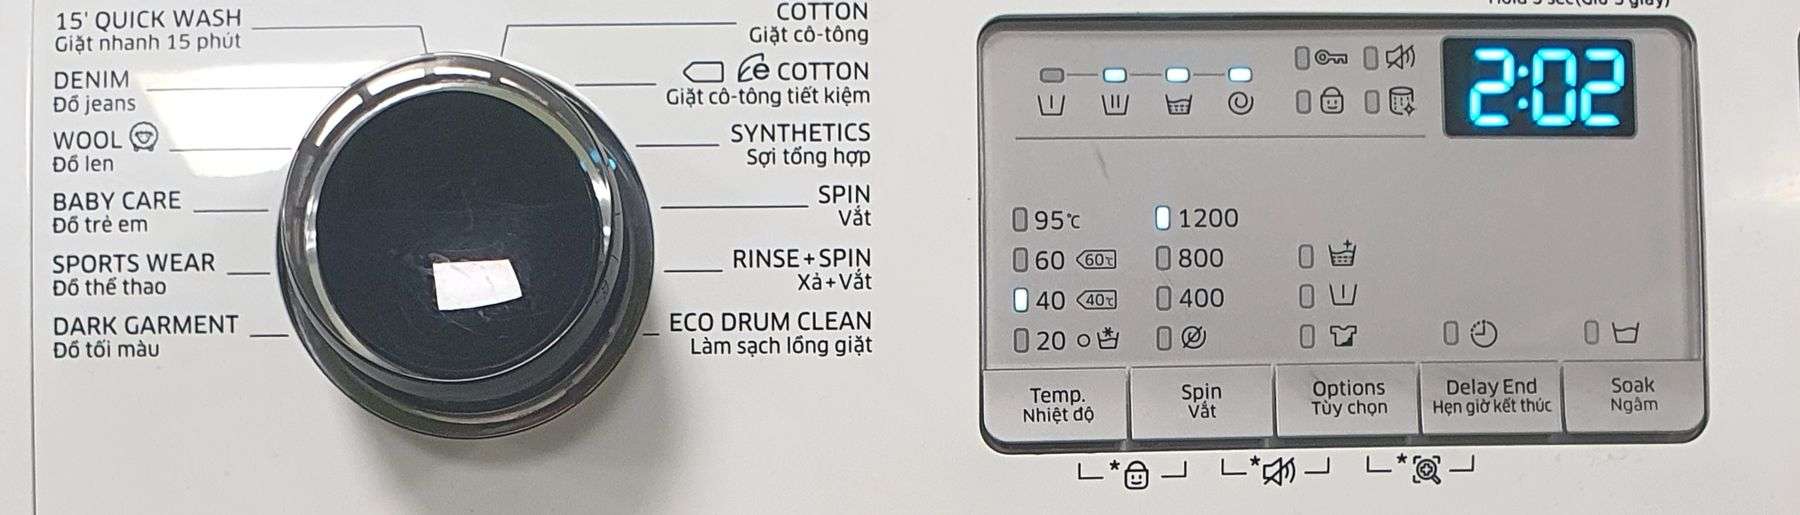 Những chức năng giặt đa dạng trên máy giặt